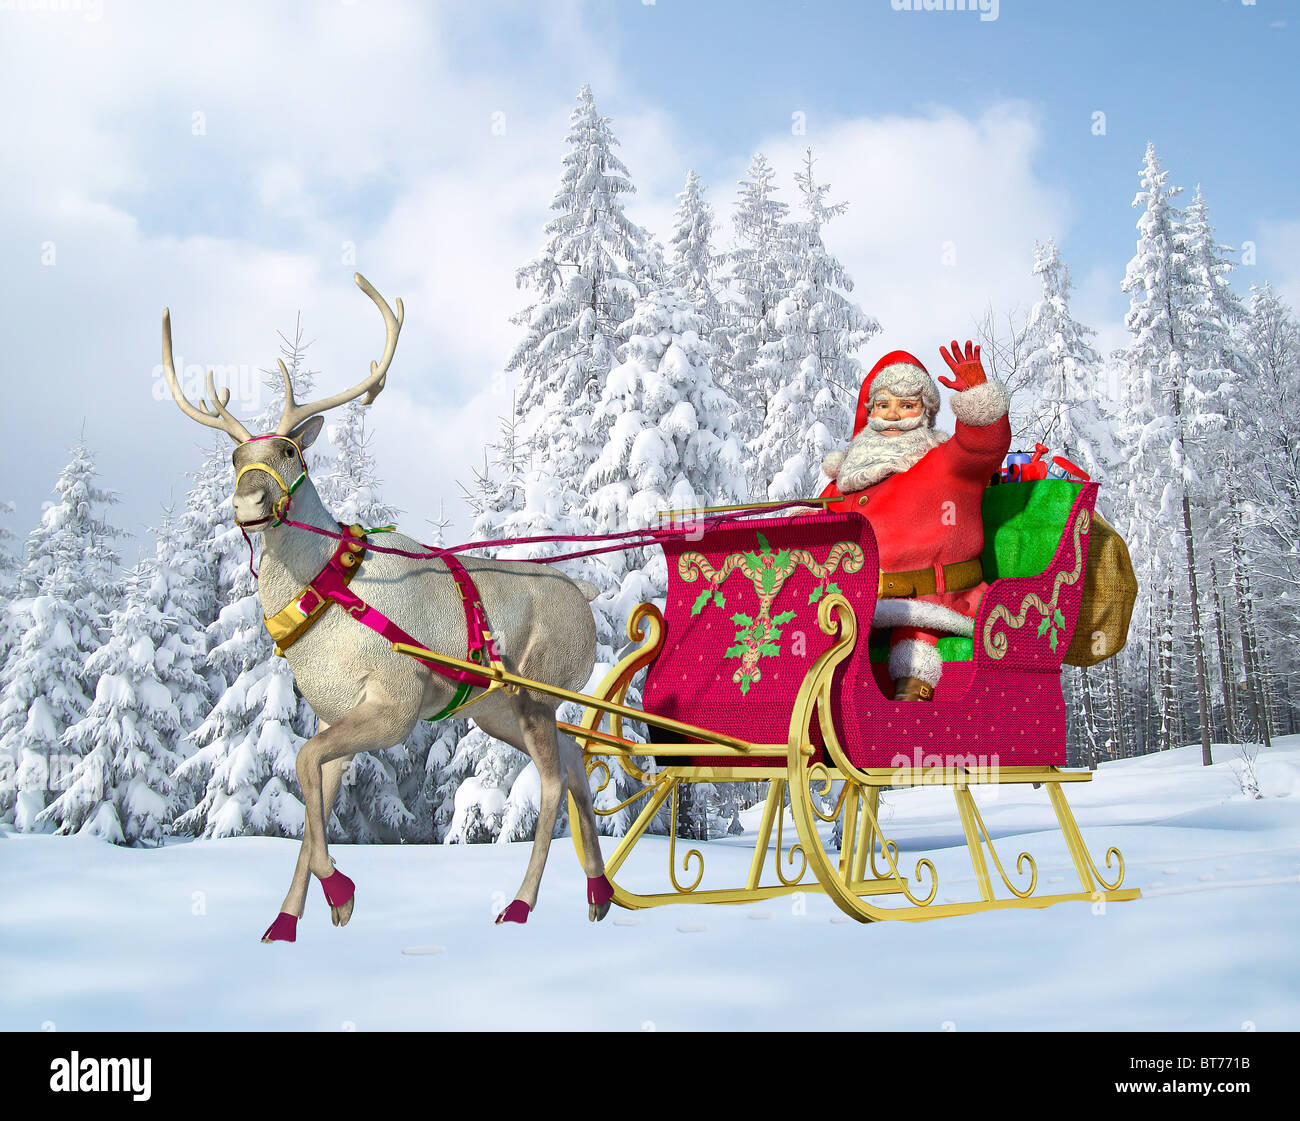 Image result for image of reindeer sled